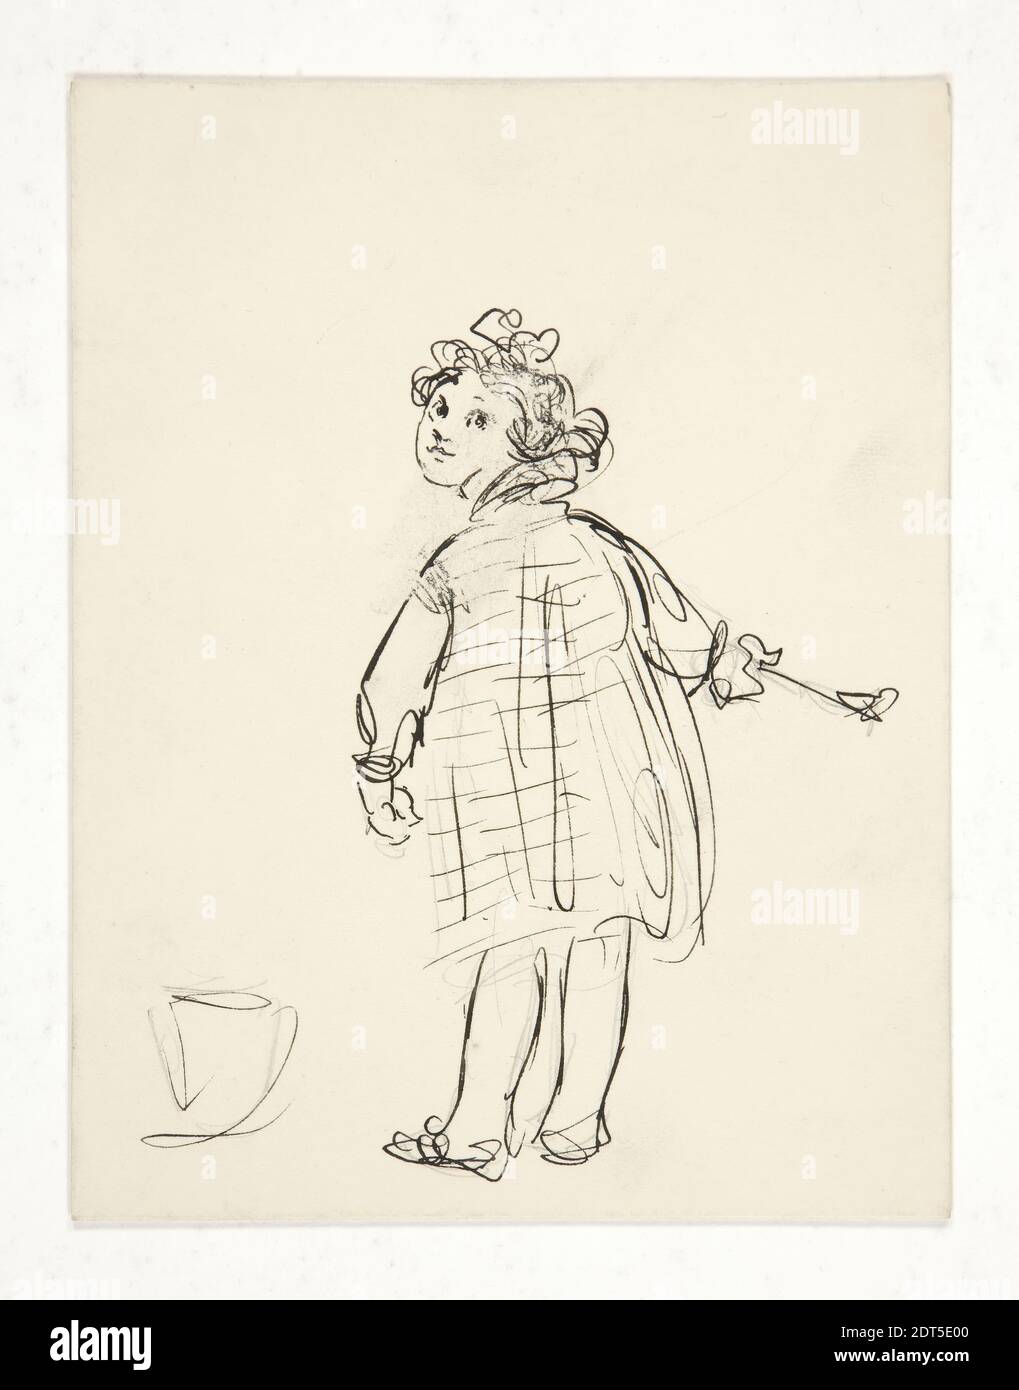 Artiste: Edwin Austin Abbey, américain, 1852–1911, M.A., 1897, esquisse d'une petite fille; étude préliminaire pour la carte du nouvel an, 1937.3648, stylo et encre, graphite, cartonné, 11.4 × 8.9 cm (4 1/2 × 3 1/2 po.), fabriqué aux États-Unis, américain, 19e siècle, œuvres sur papier - dessins et aquarelles Banque D'Images